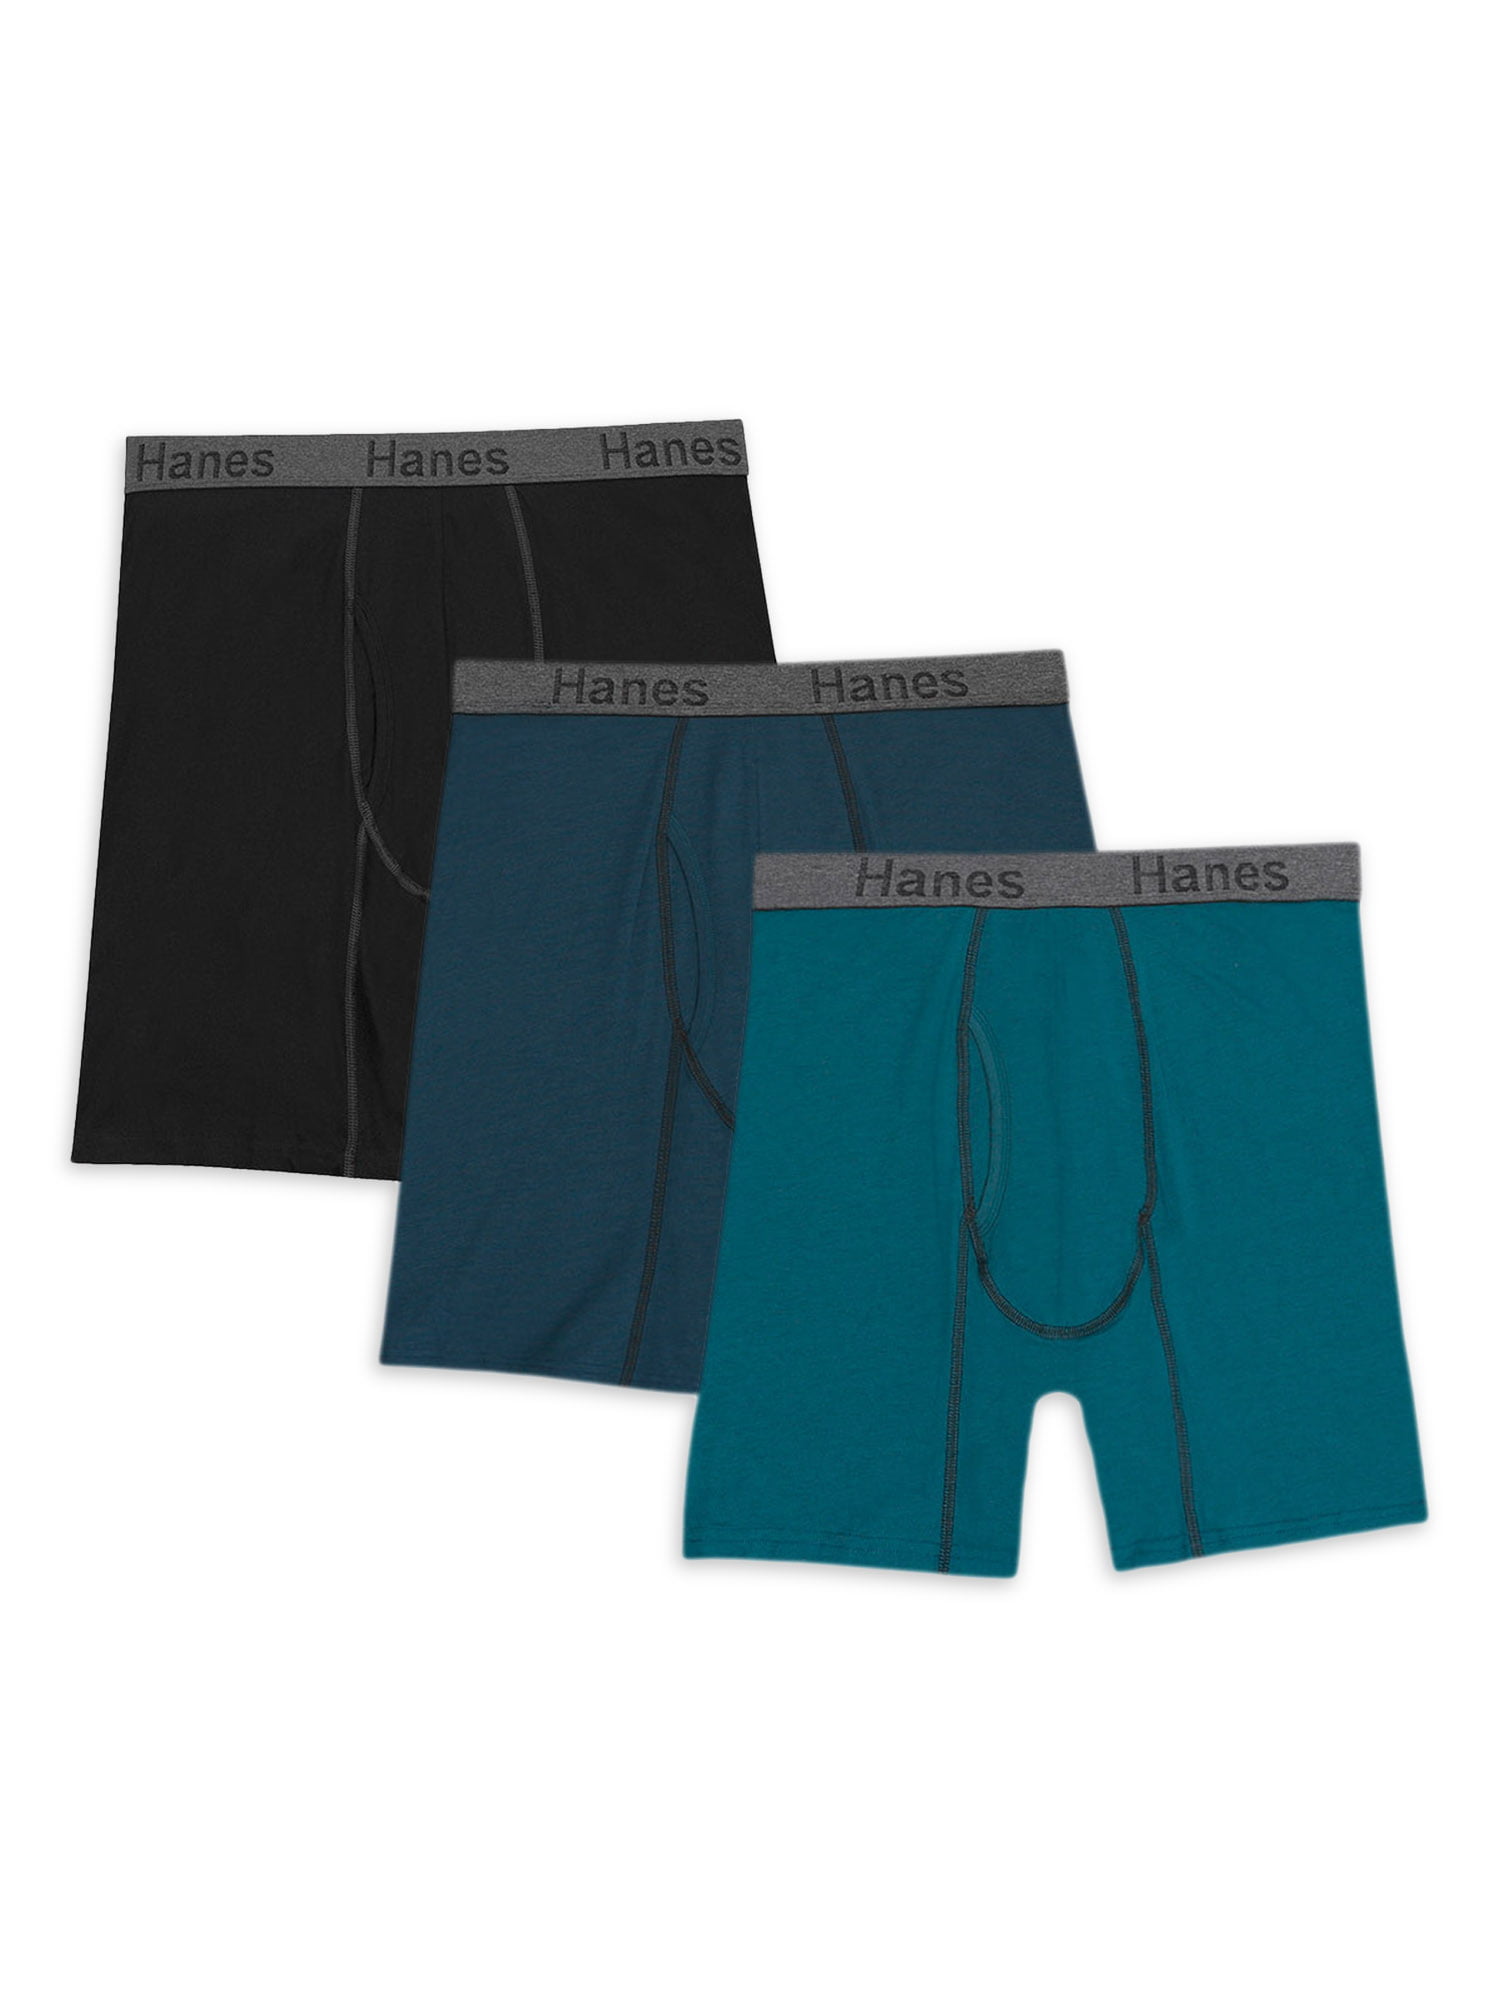 Mens Soft cotton Blend comfortable Underwear 3-PACK Boxer Briefs Panties S~3XL 